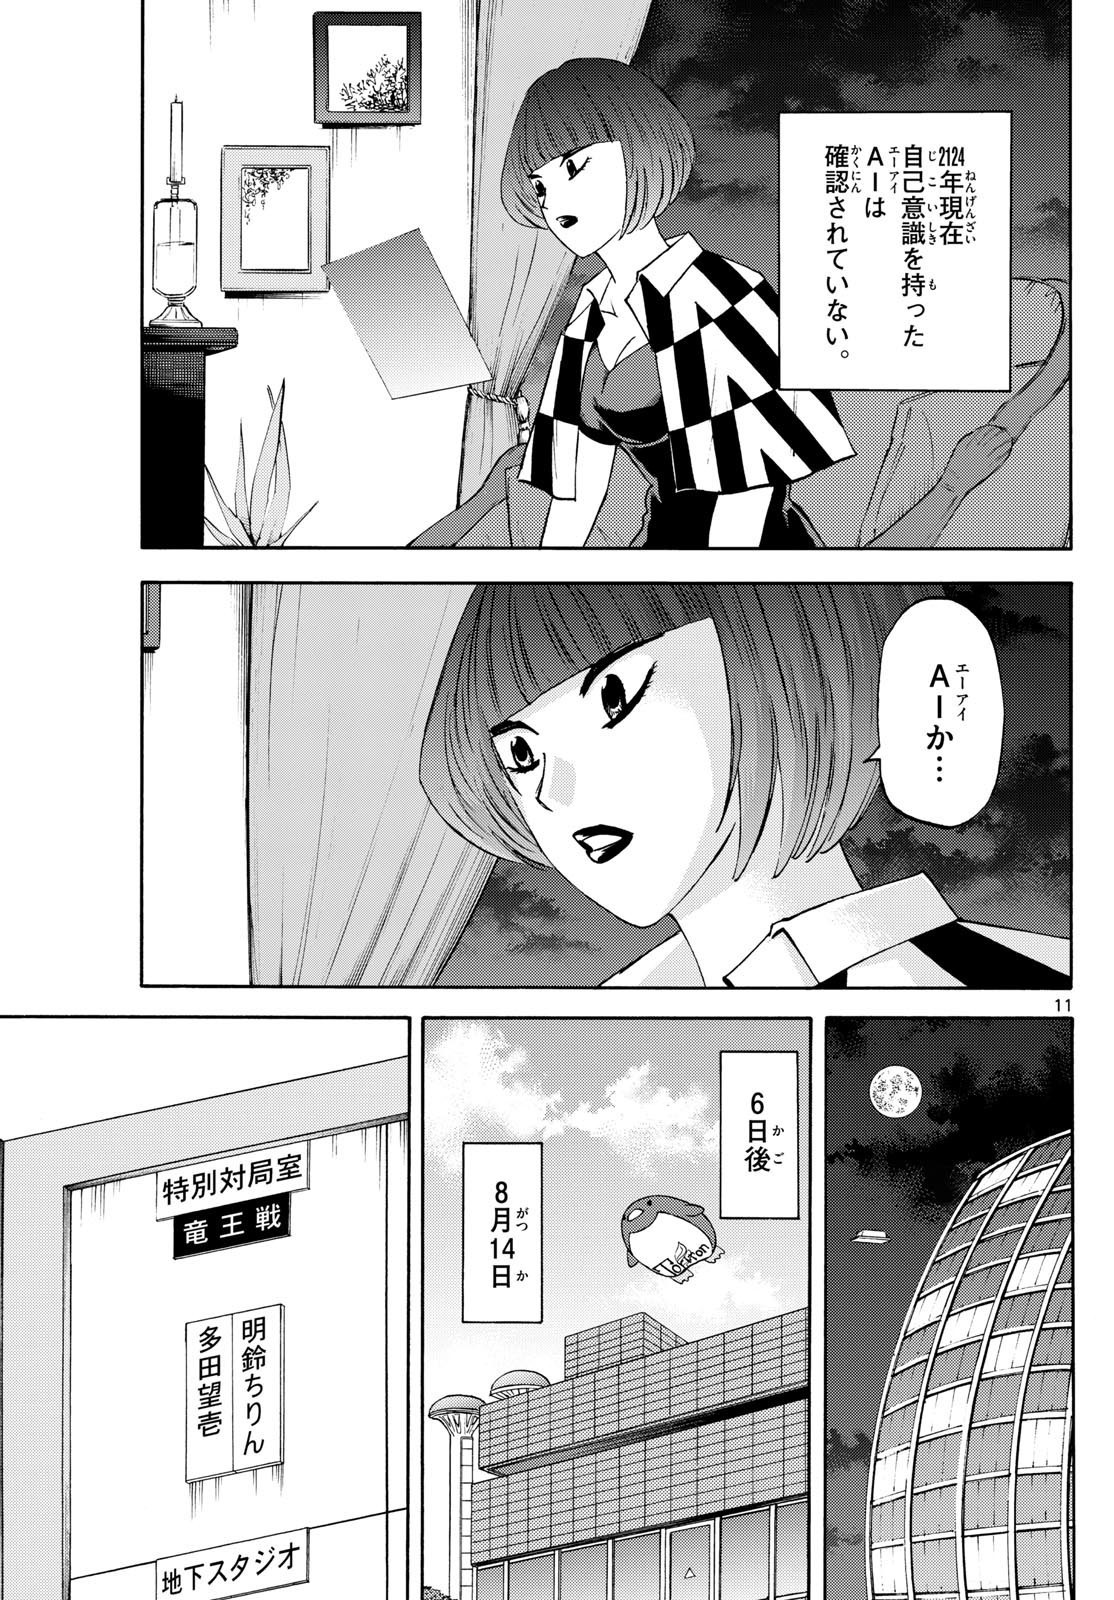 Ryu-to-Ichigo - Chapter 199 - Page 11